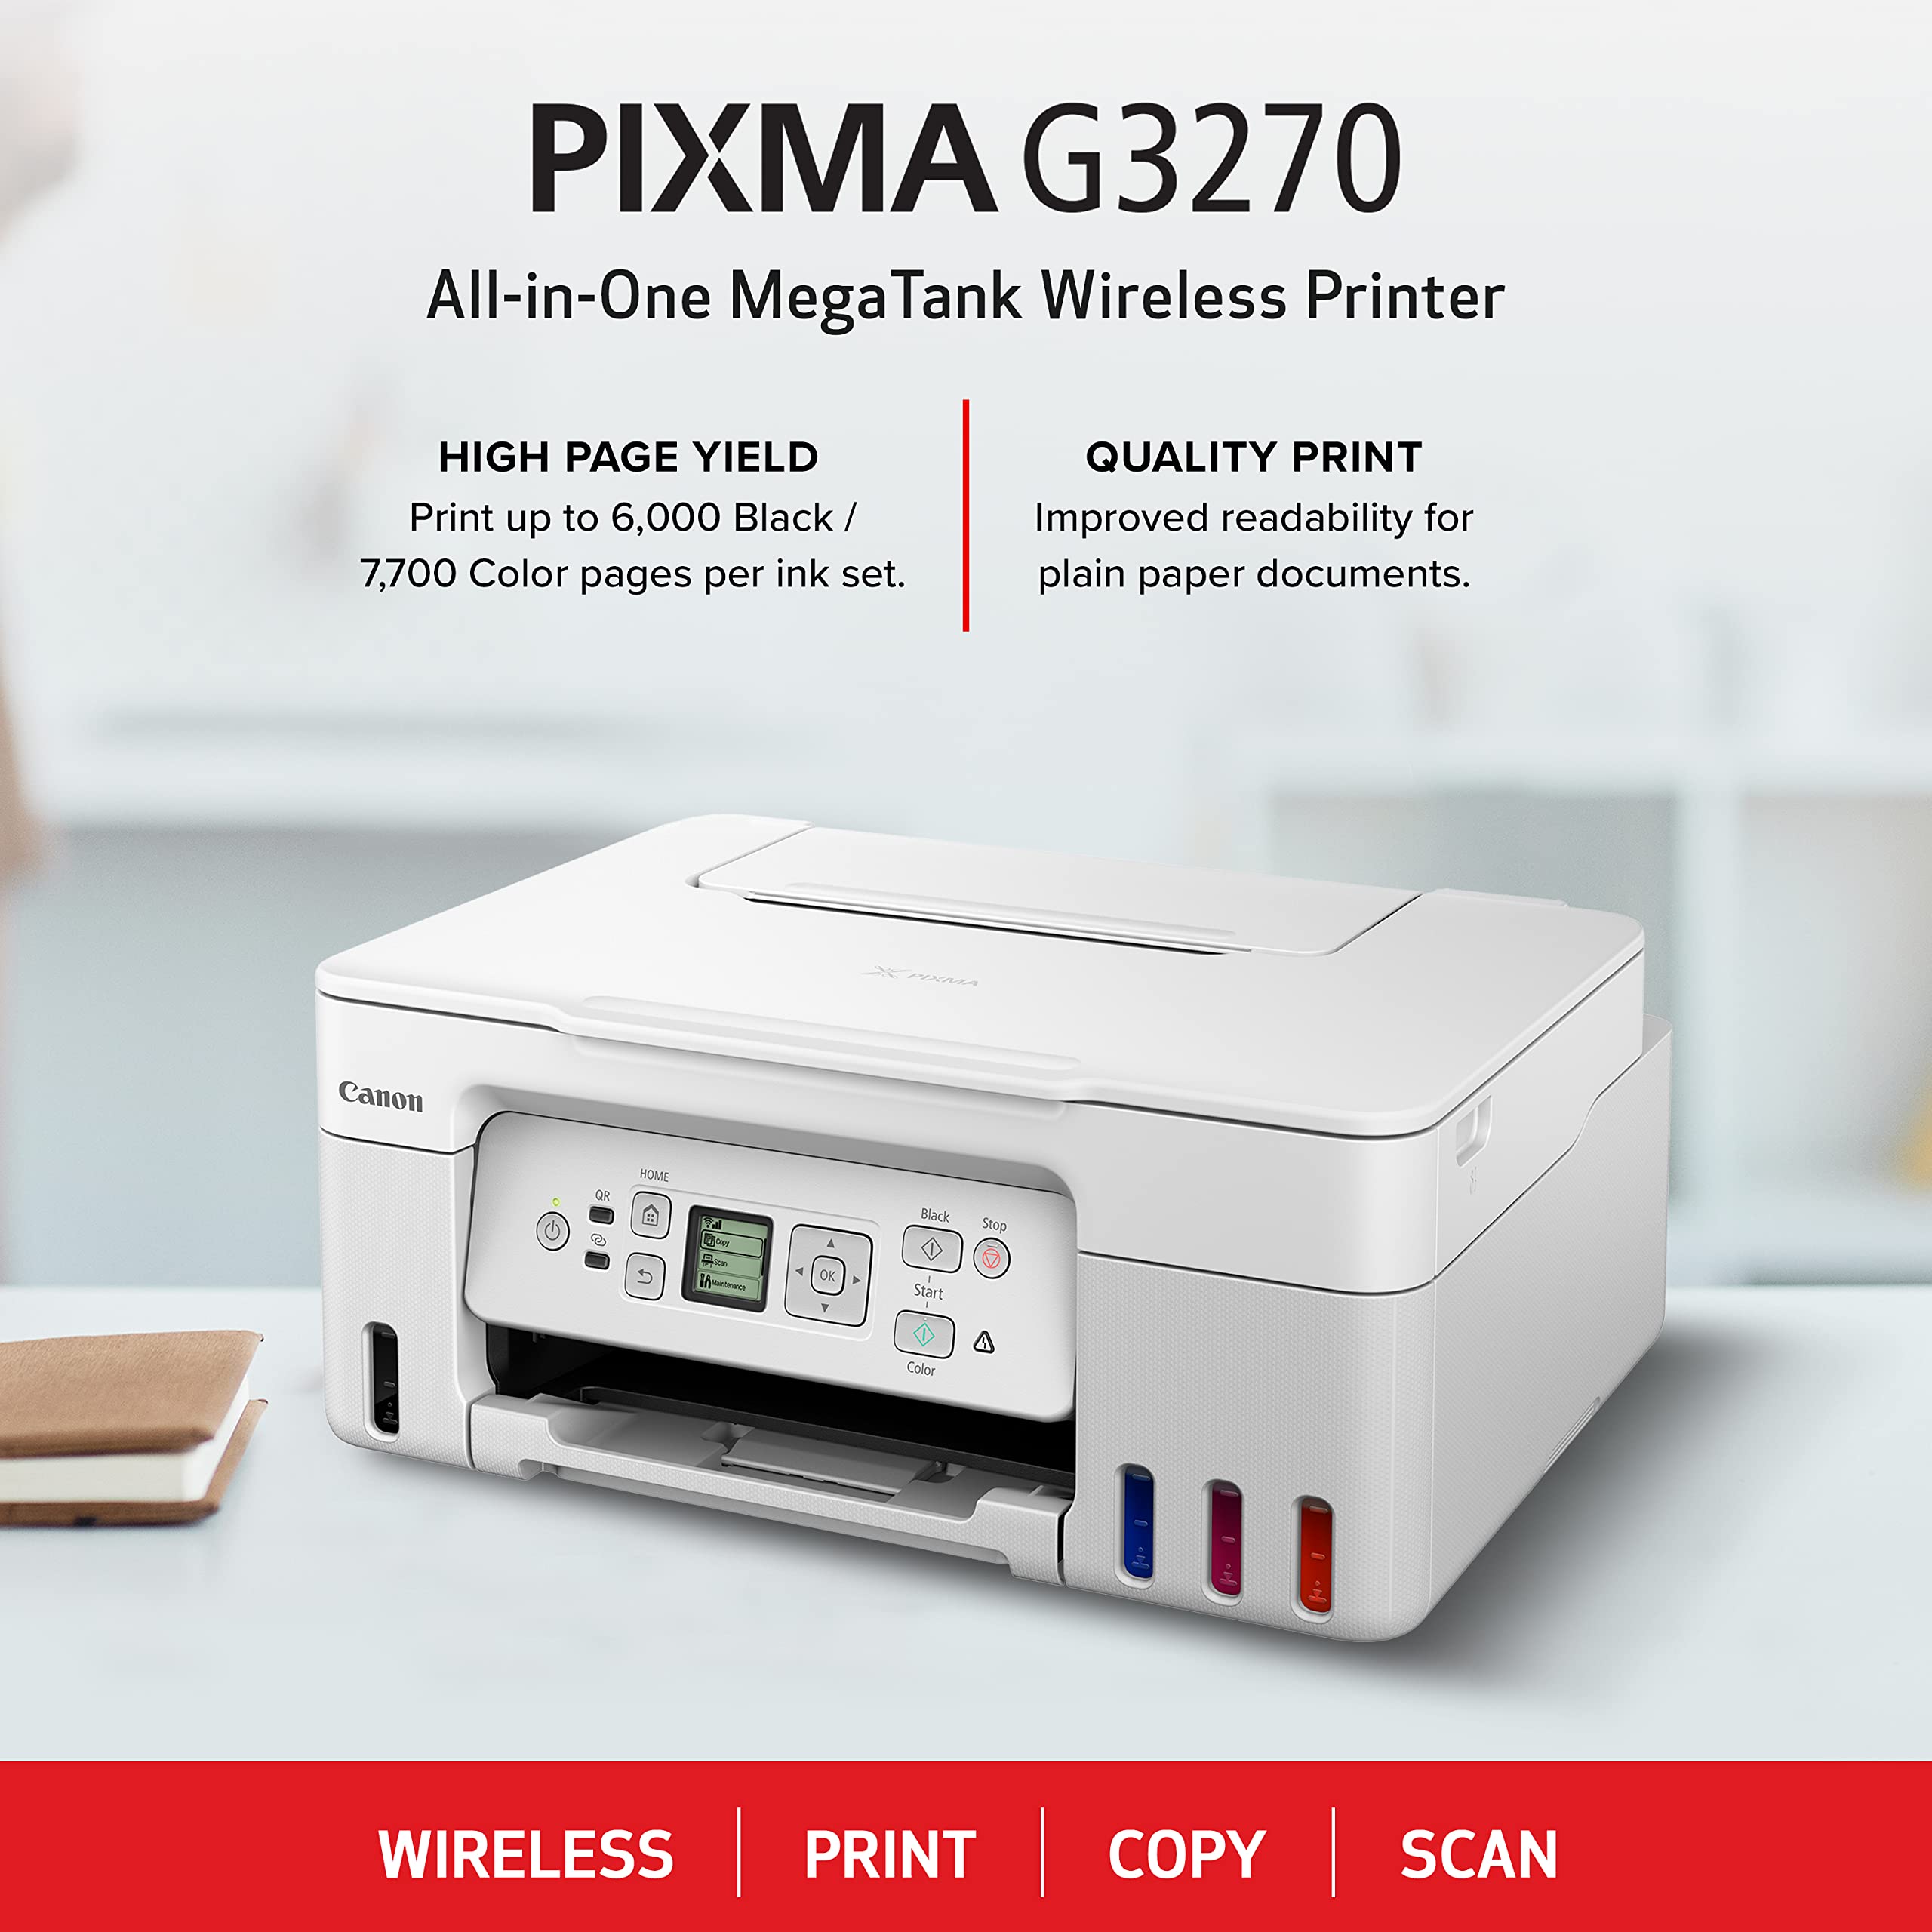 Canon PIXMA G3270 - Wireless MegaTank All-in-One Printer